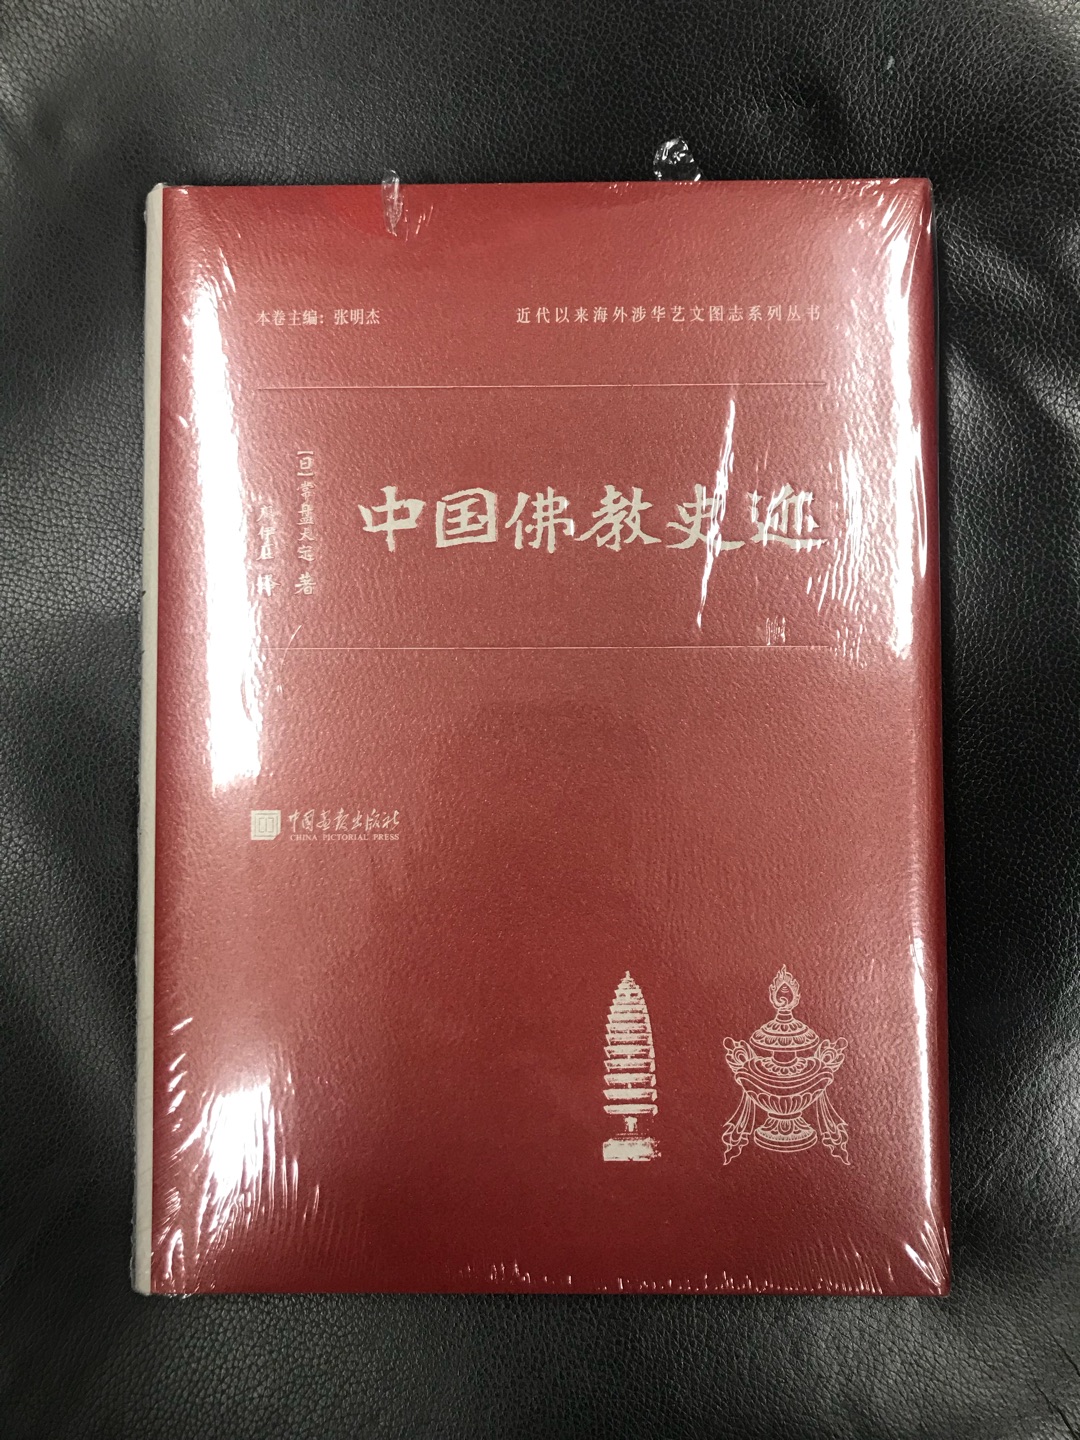 这套日本前辈学者的中国调查报告，终于出版了，实在是弥足珍贵，开本很大，也算对得起这个价格了！